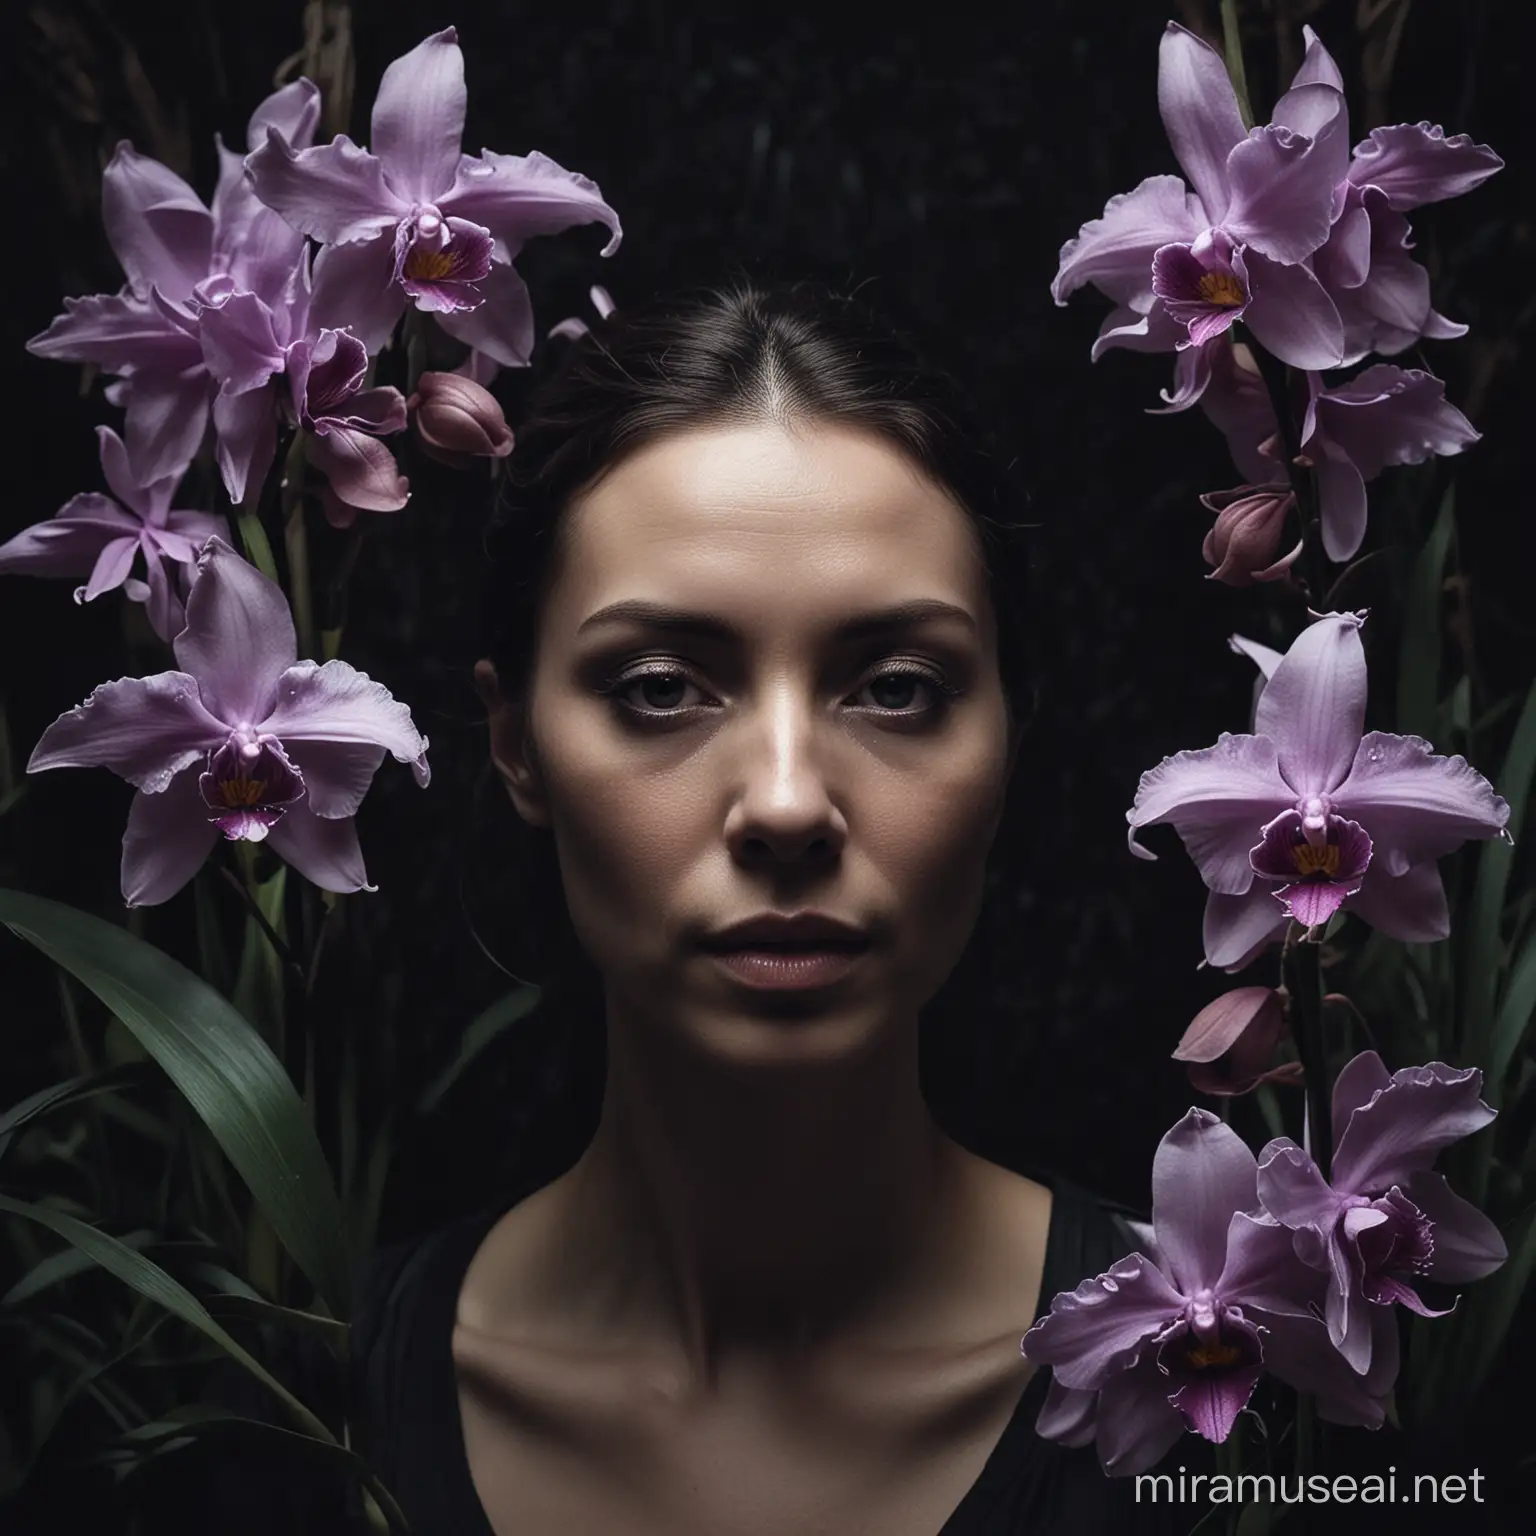 retrato de mulher vista a três quartos, em ambiente escuro e dramático e rodeada de orquídeas 